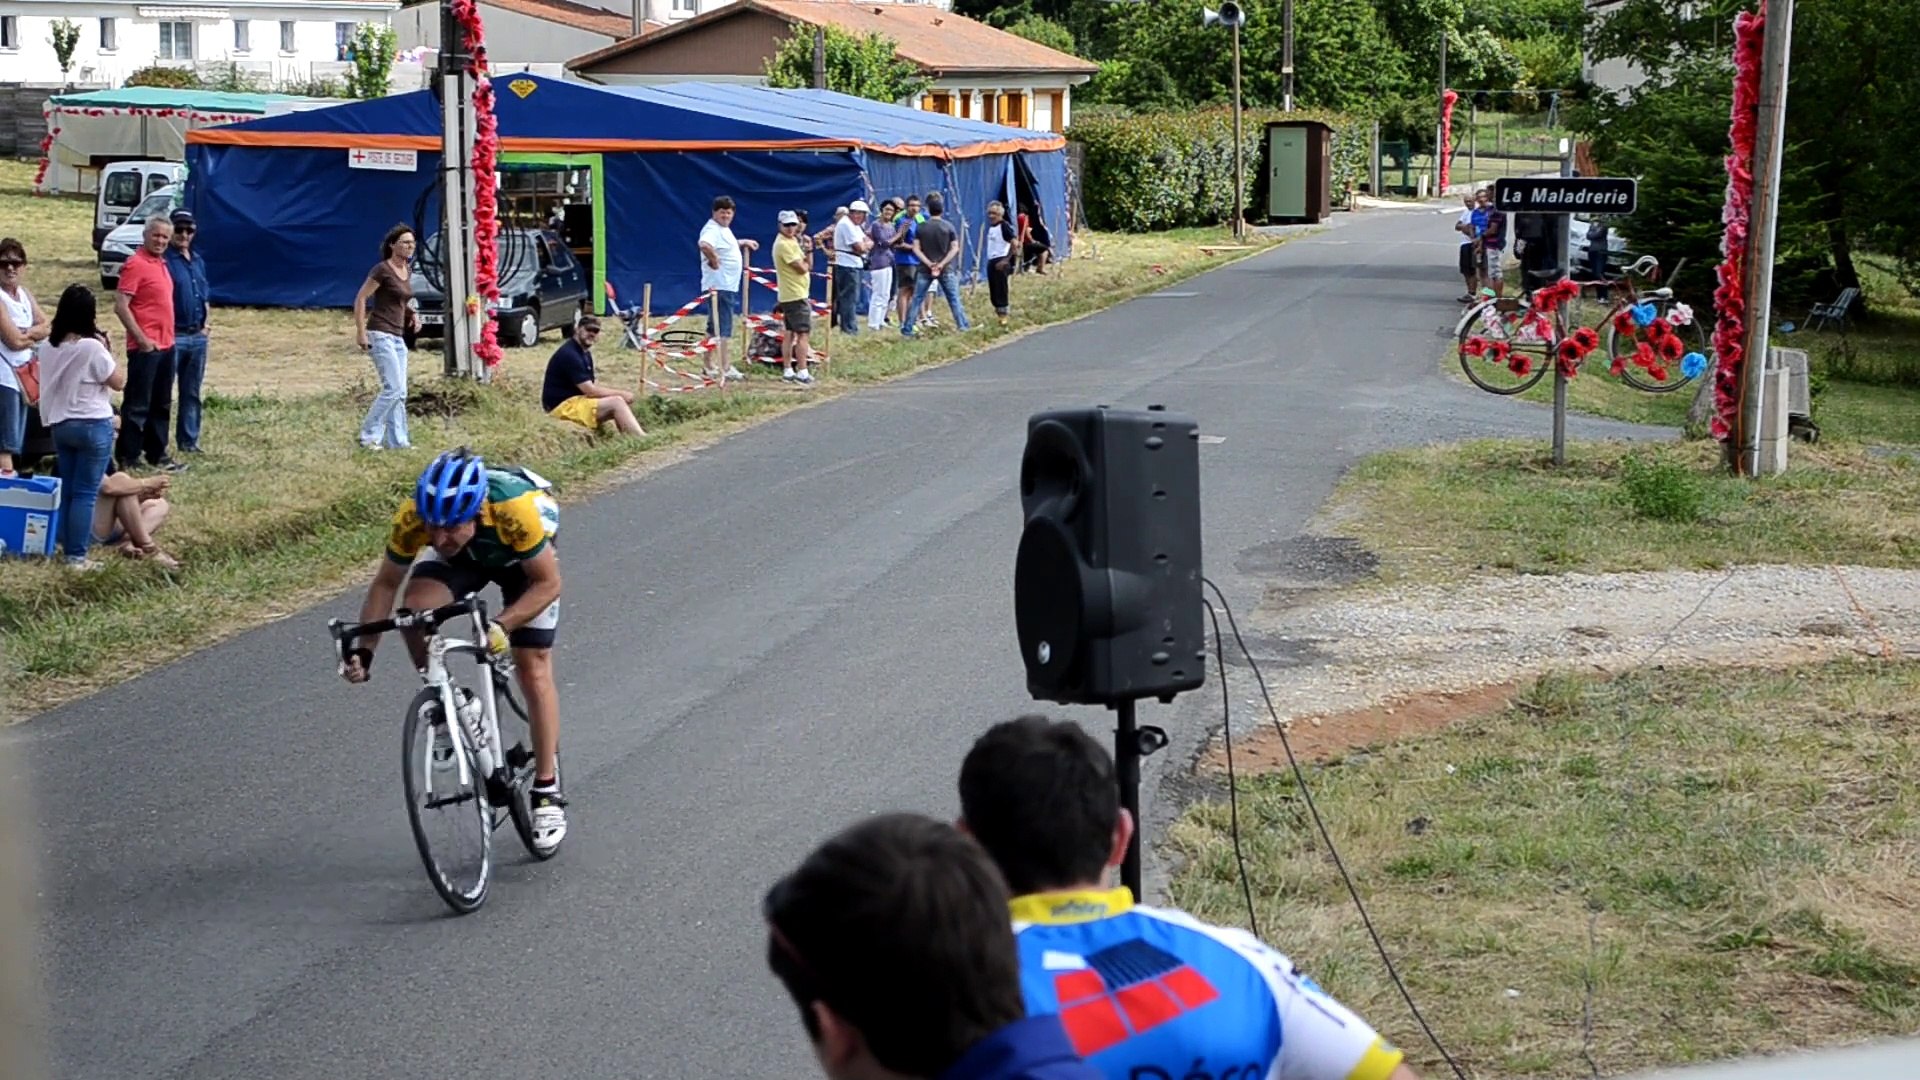 Course cycliste Ufolep 13 juin 2015 à La Maladrerie Nontron - Vidéo  Dailymotion